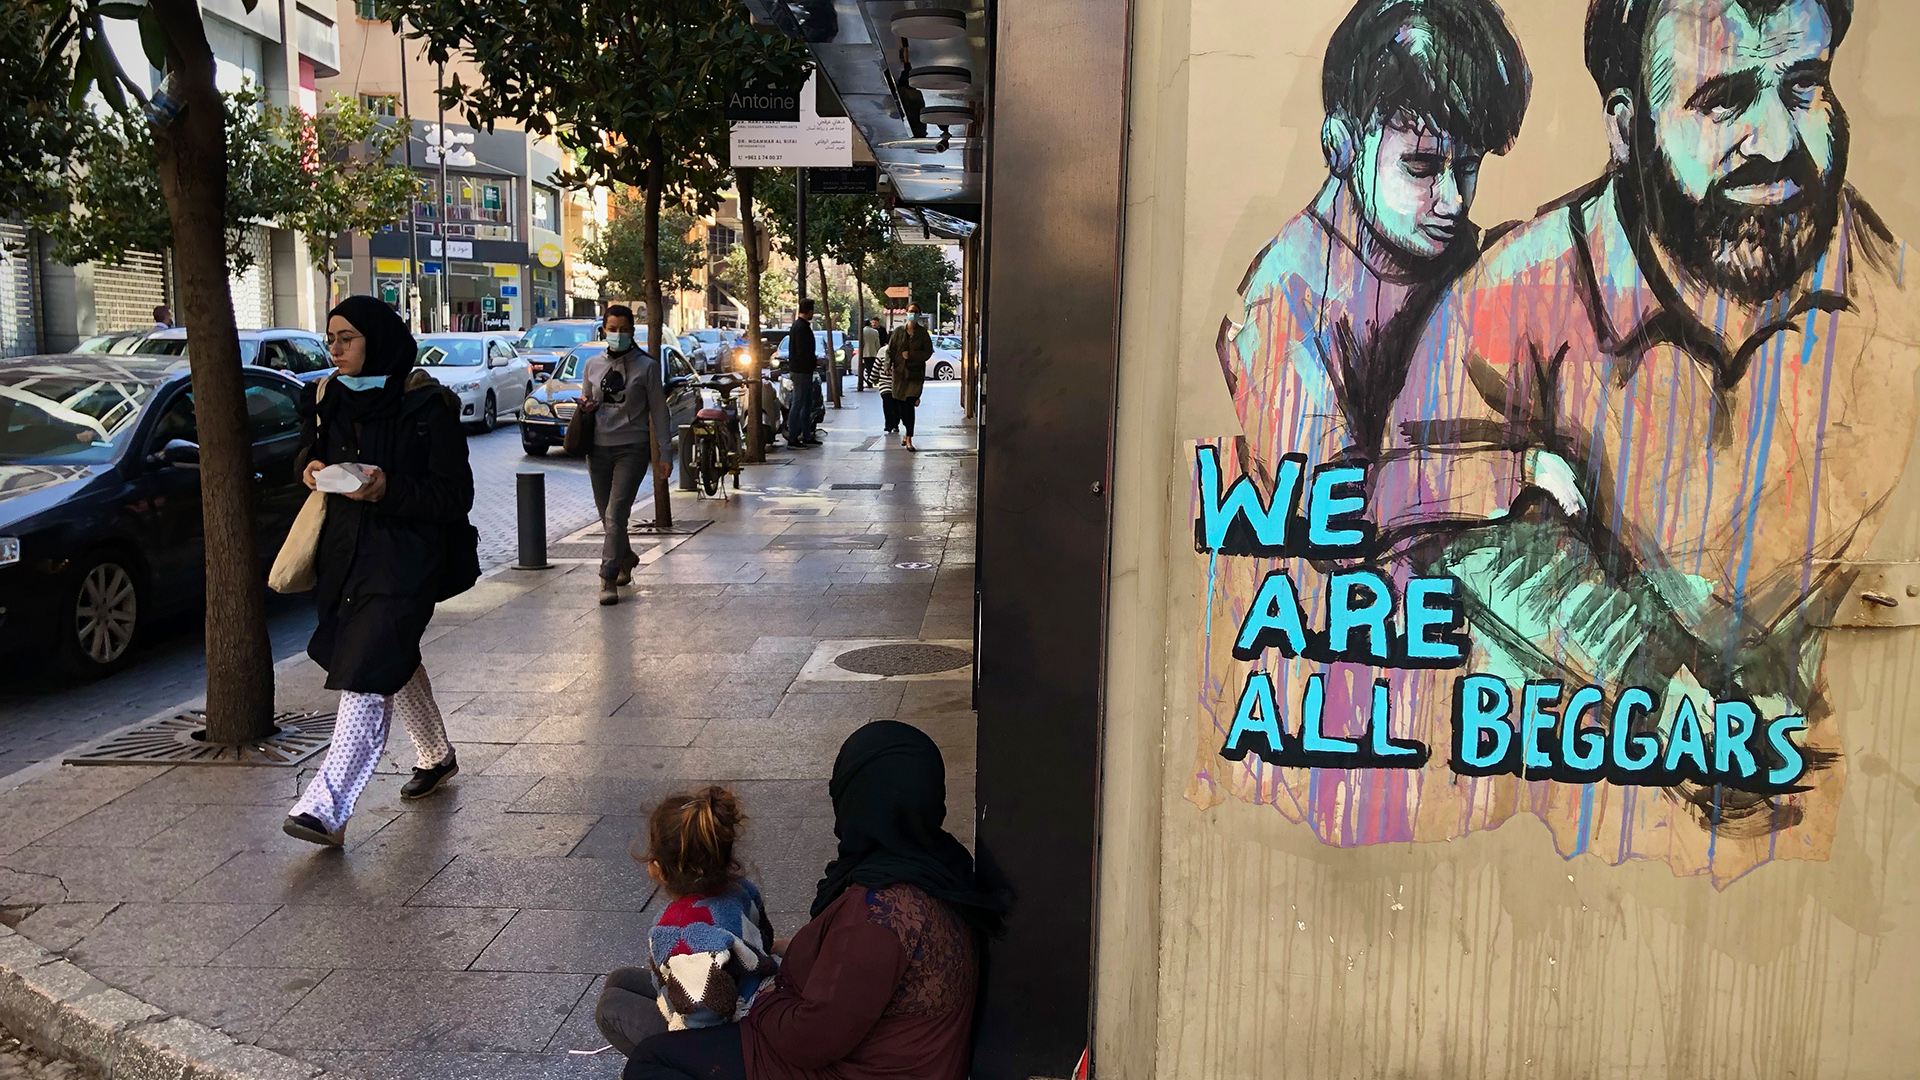 Libanon, Beirut: Menschen gehen an einer Frau vorbei, die mit ihrer Tochter auf dem Boden sitzt und bettelt, neben ihr ein Grafitto mit dem Text: "We are all beggars". | dpa